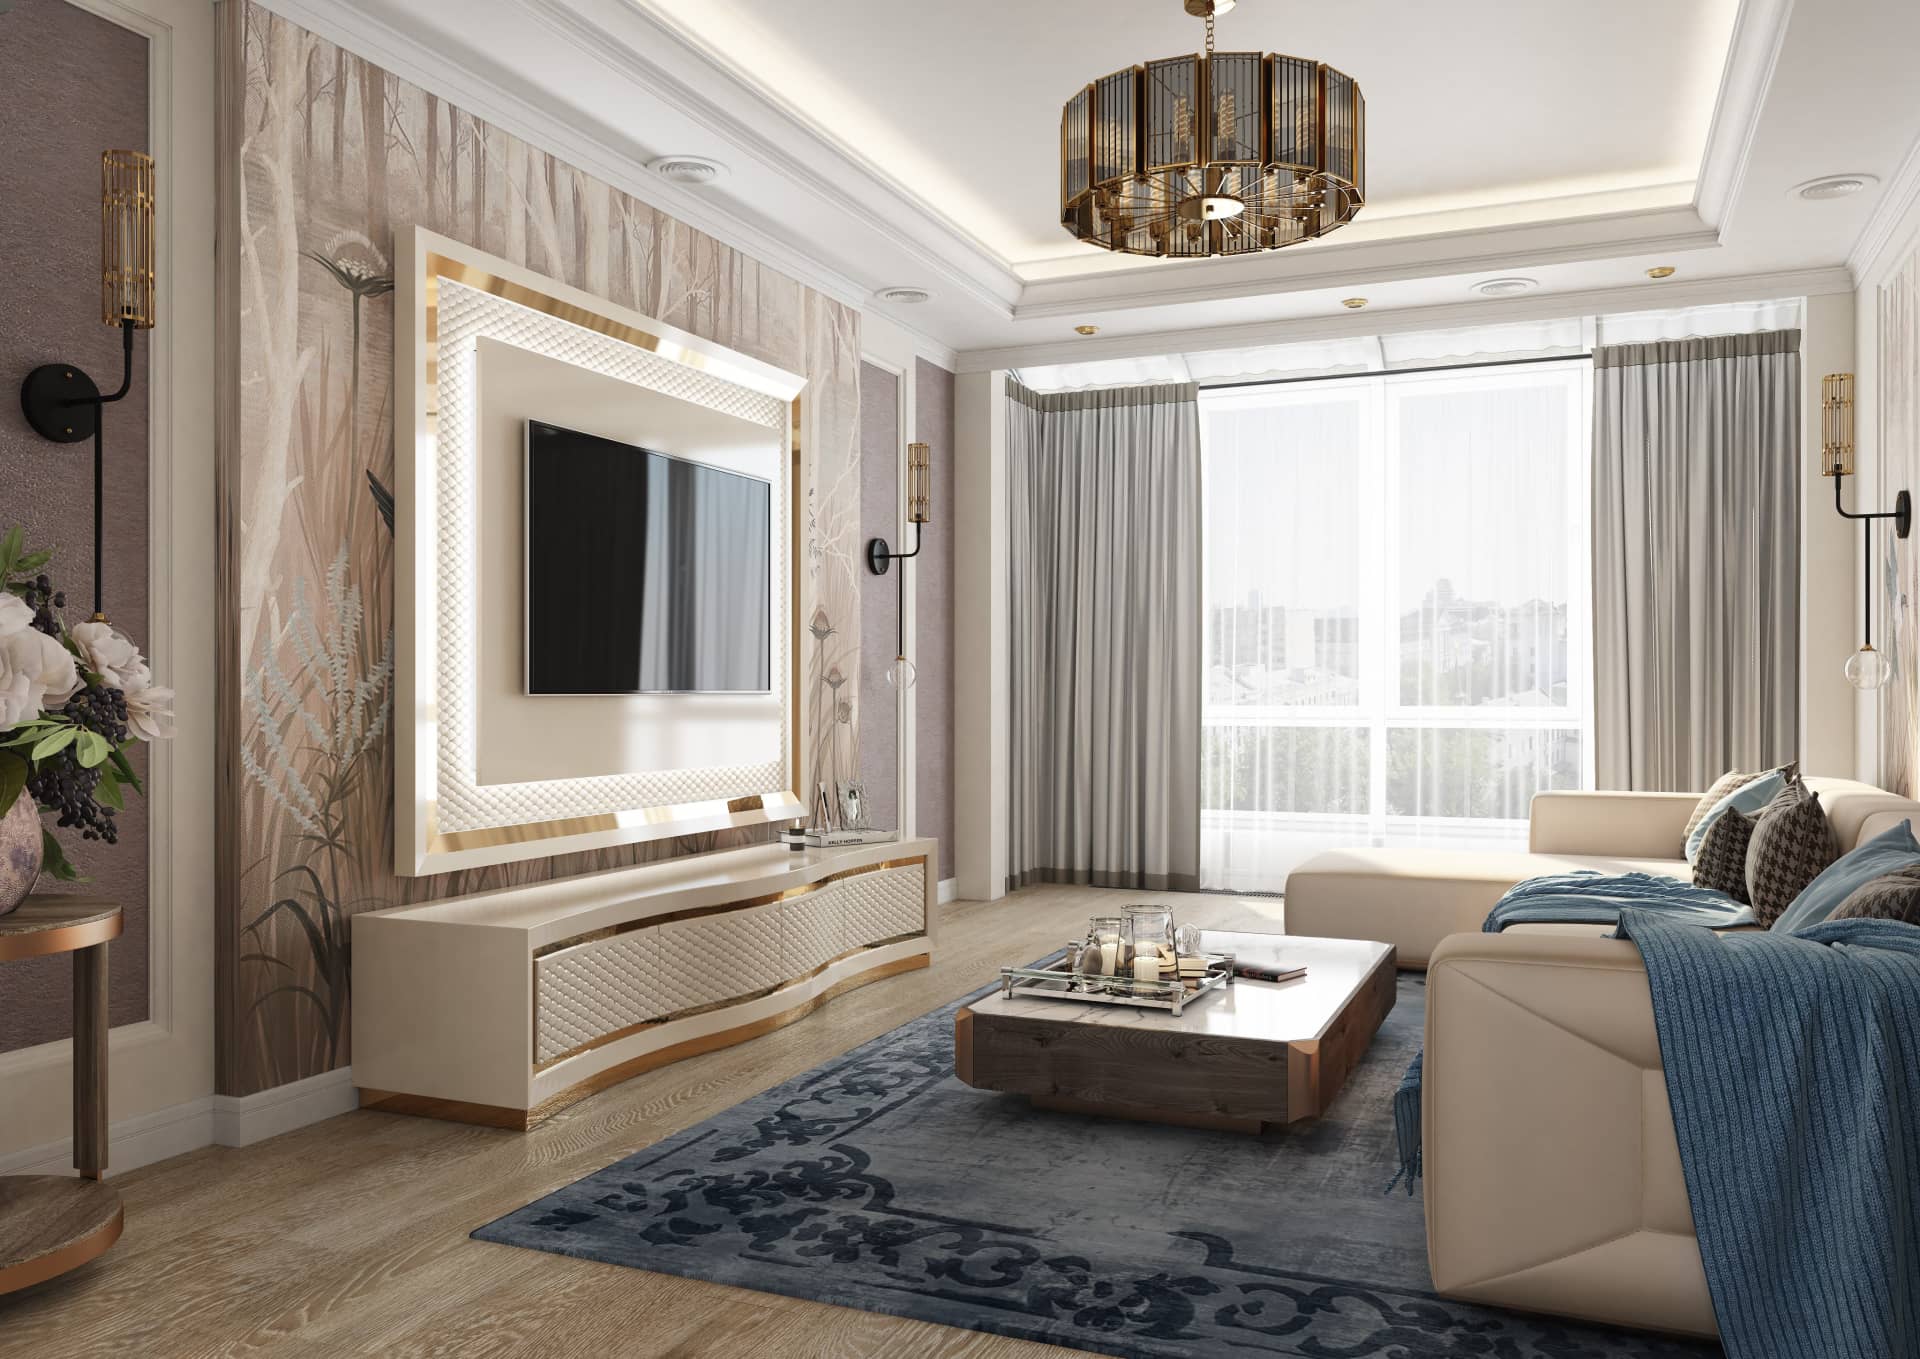 Оформление интерьера гостиной трехкомнатной квартиры в коричневый цвет в стиле современной классики. Фото № 56581.